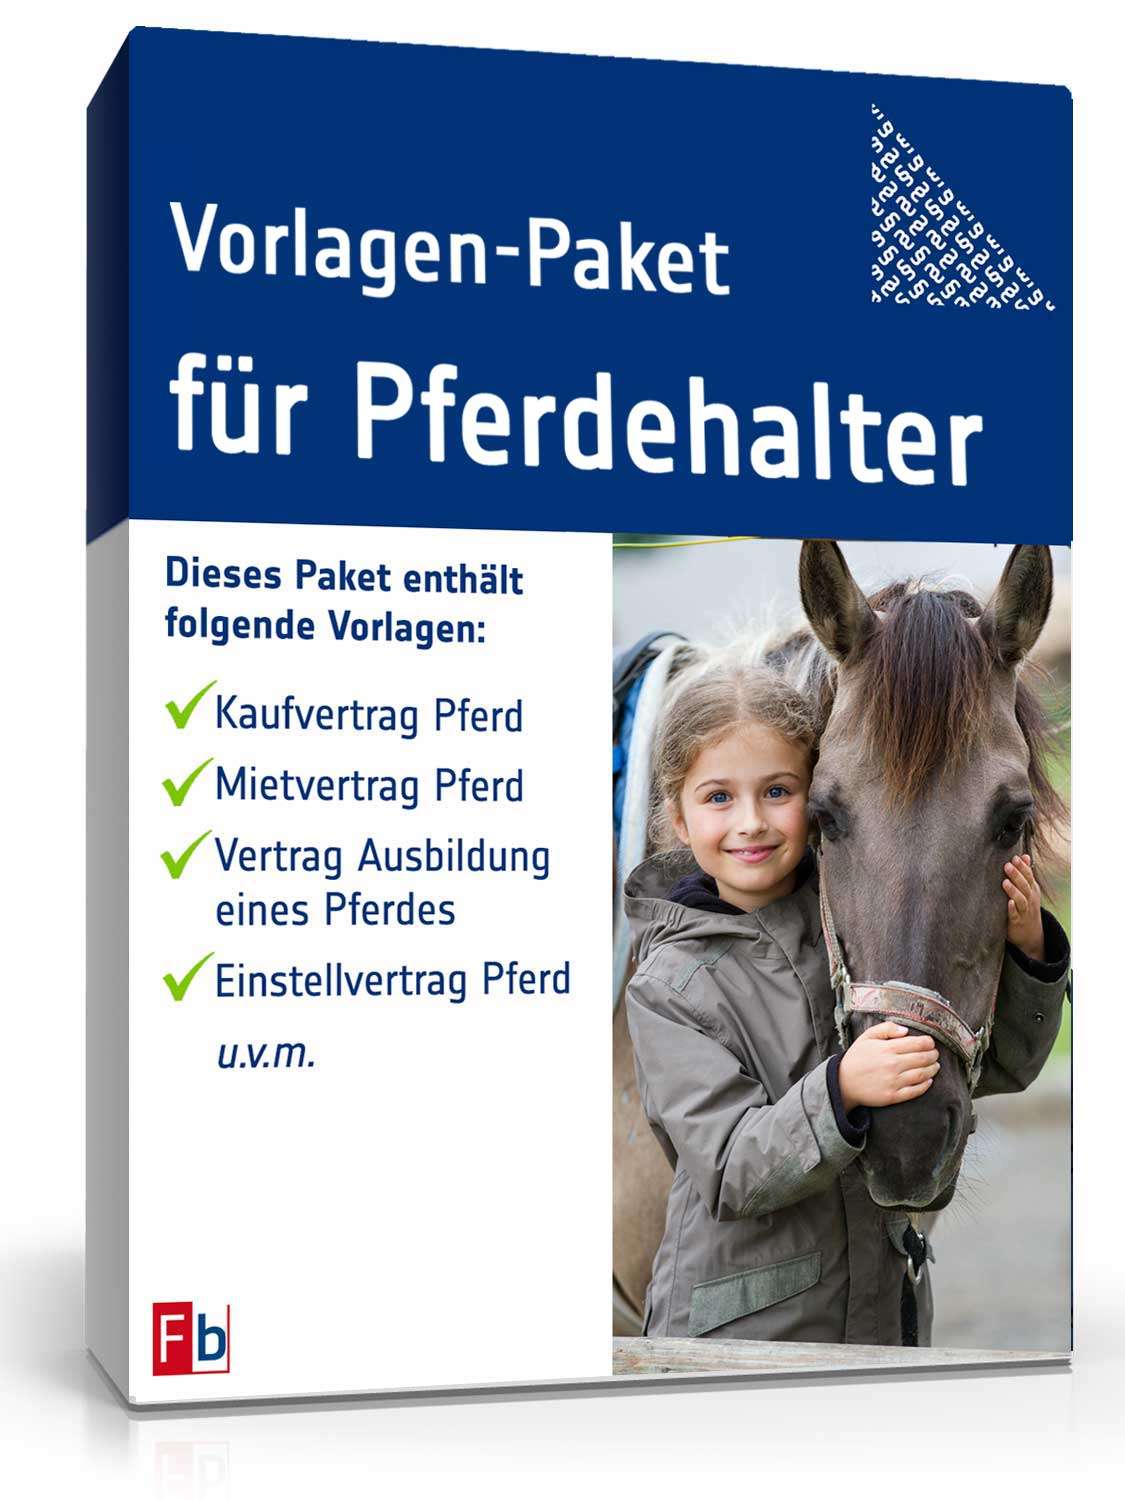 Hauptbild des Produkts: Vorlagen-Paket für Pferdehalter